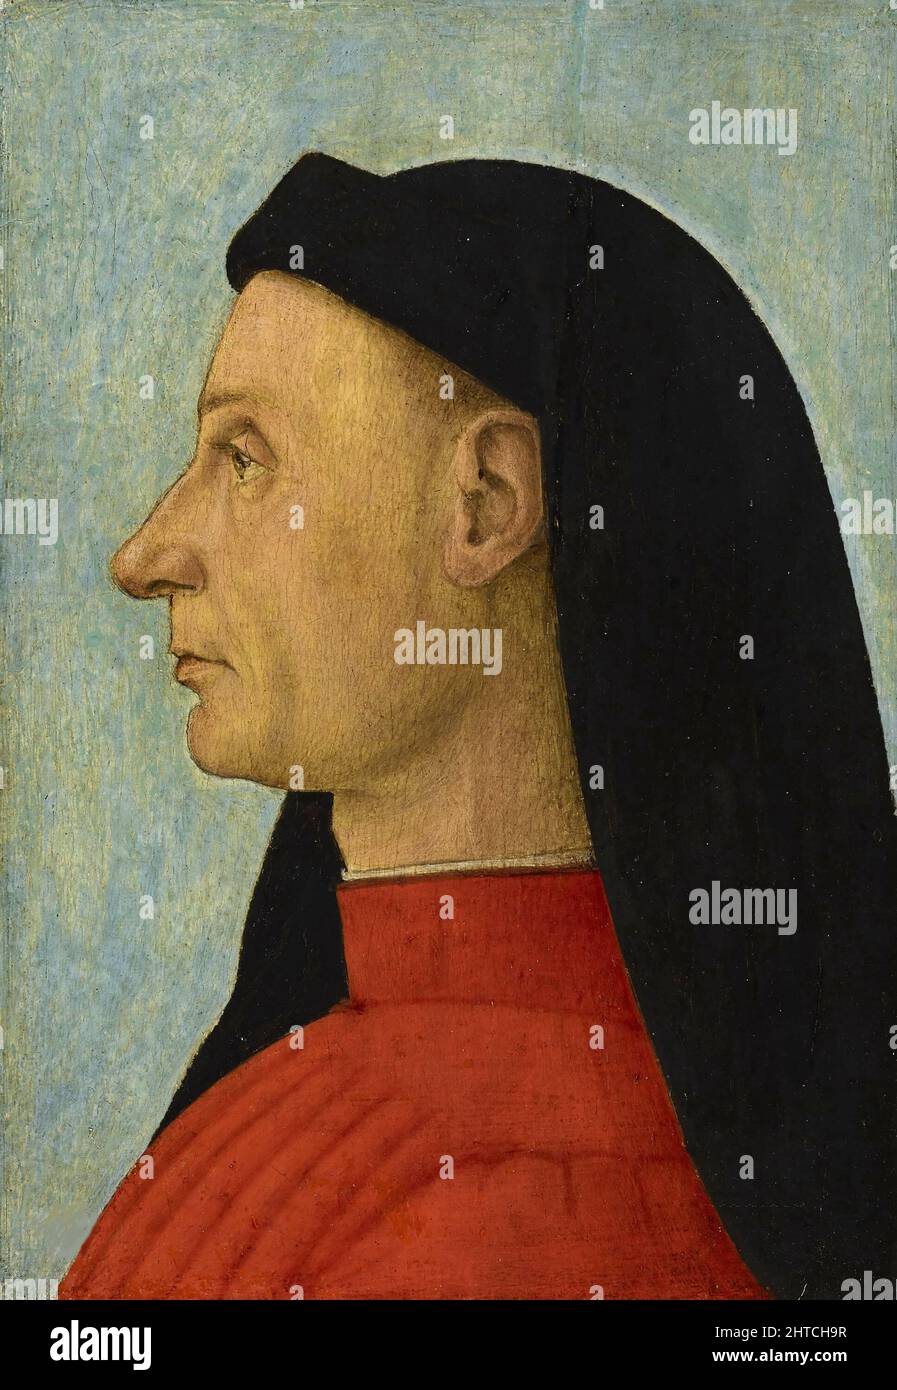 Retrato de un hombre, c. 1495. Encontrado en la Colección de la Accademia Carrara, Bérgamo. Foto de stock